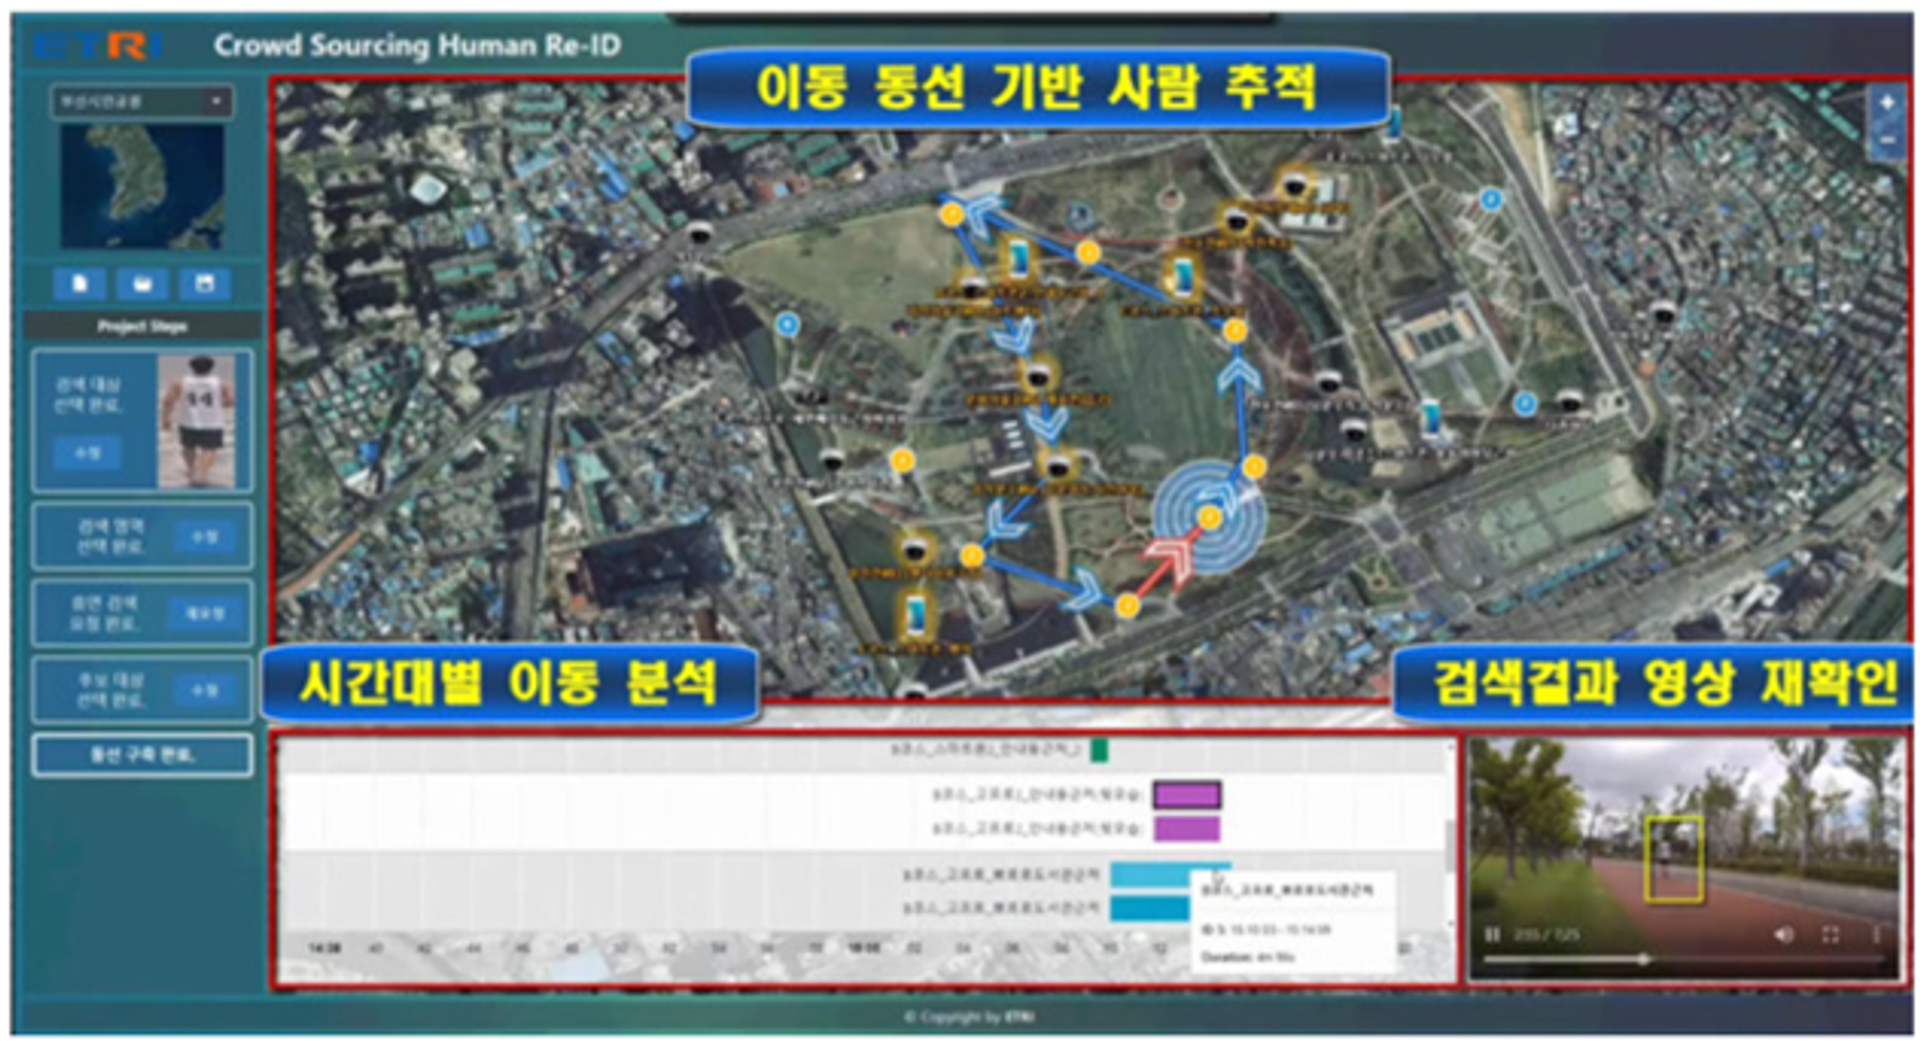 그림 1 CCTV 영상 활용 기술(사람 재식별) 예시 이미지(출처 : 한겨레 2020.11.30. 인공지능의 예측 기술은 범죄 발생을 막아줄 수 있을까)